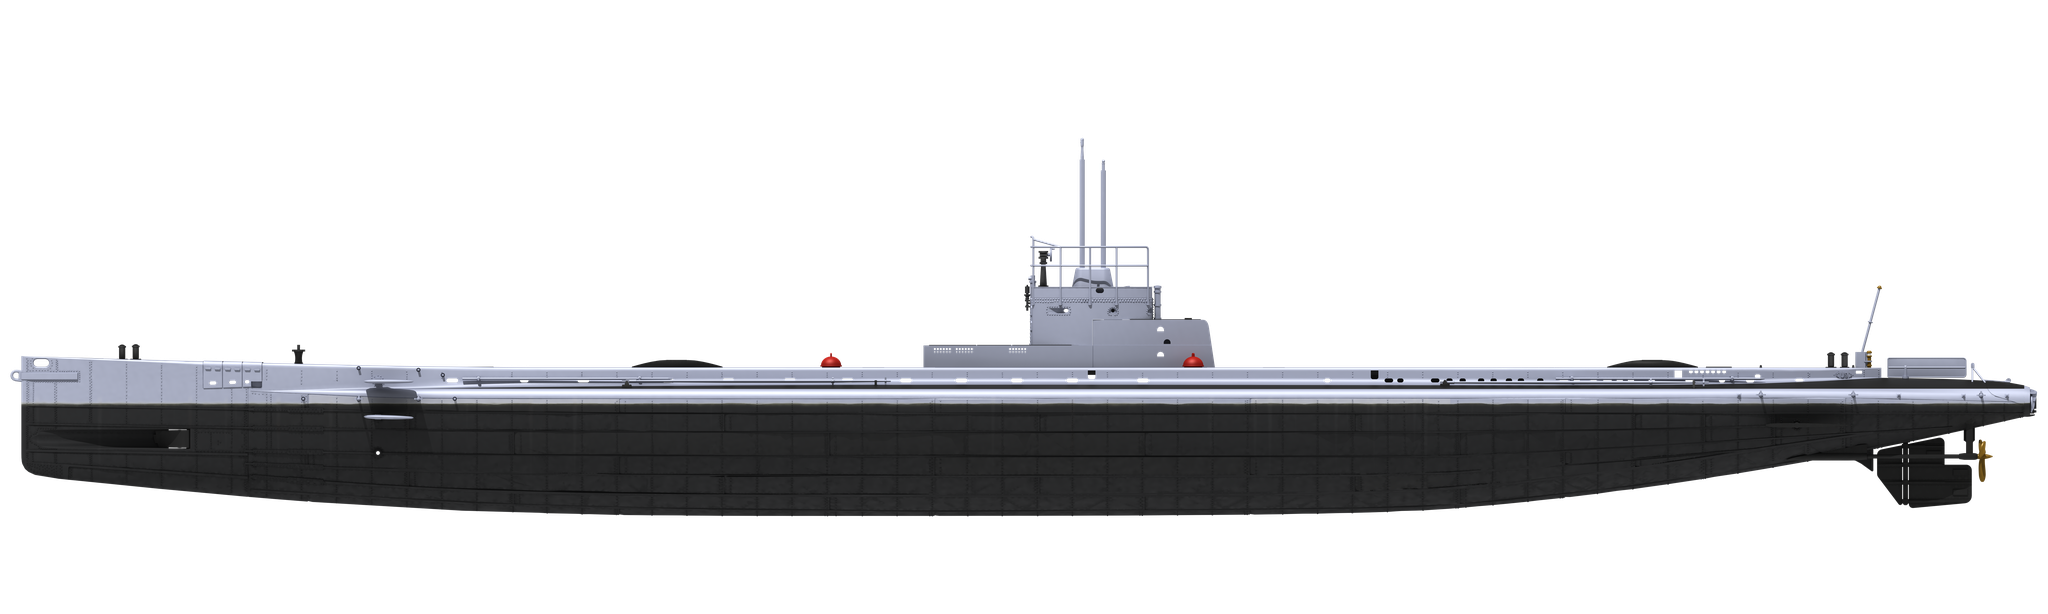 Das Werk - 1/72 S.M. U-Boat 9 - WWI German Submarine